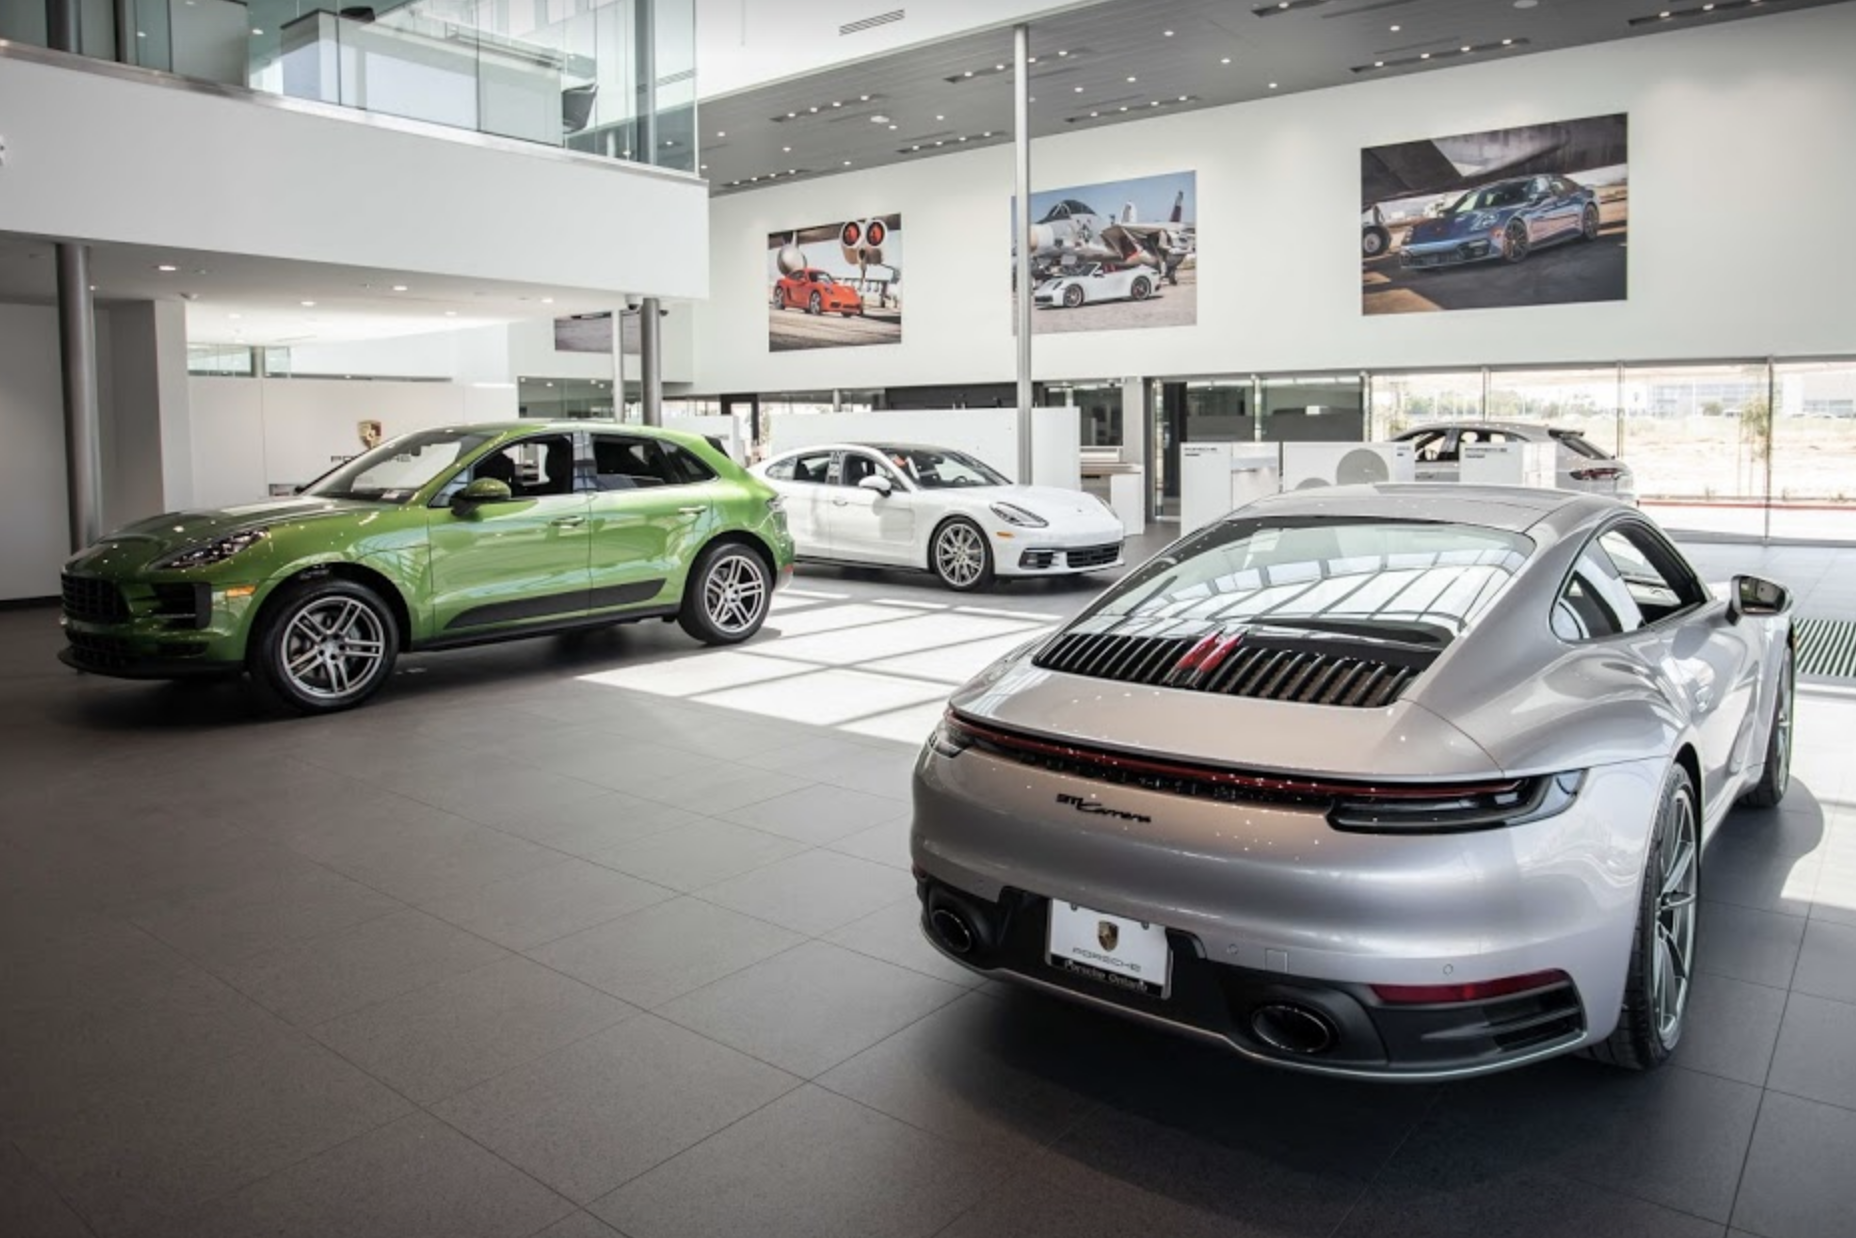 Porsche Ontario Photo